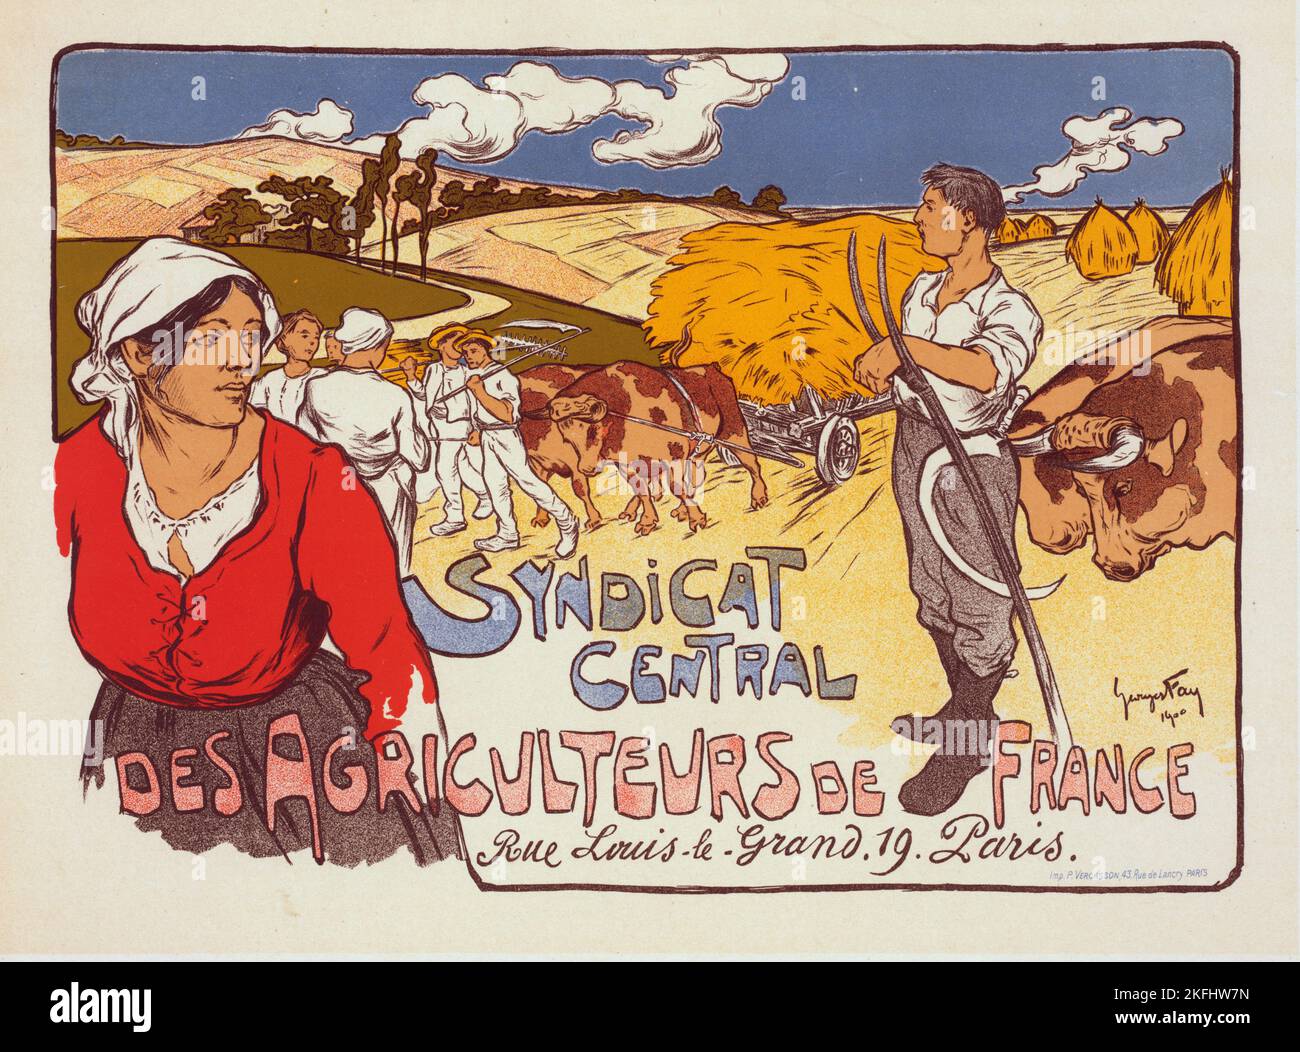 Affiche pour le "Syndicat Central des Agriculteurs de France", c1900. [Herausgeber: Imprimerie Chaix; Ort: Paris] Stockfoto